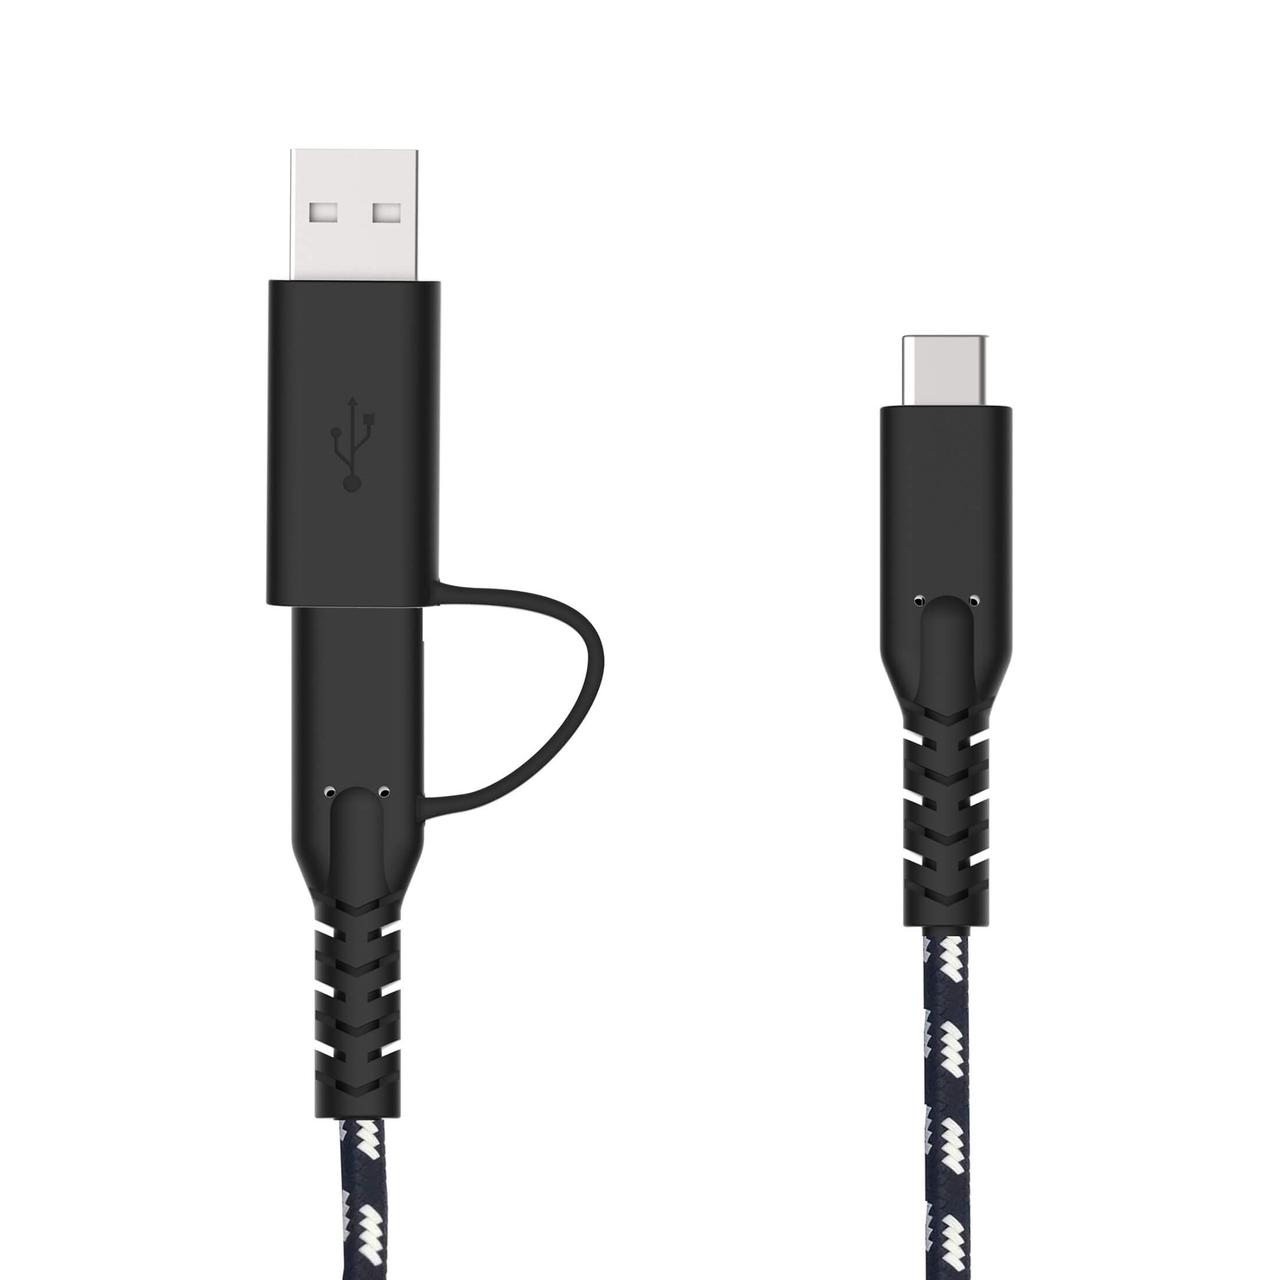 Standard-USB-Ladekabel vom fairen Hersteller mit 2 Steckern - ideal für Fairphone 3, 3 plus und Fairphone 4